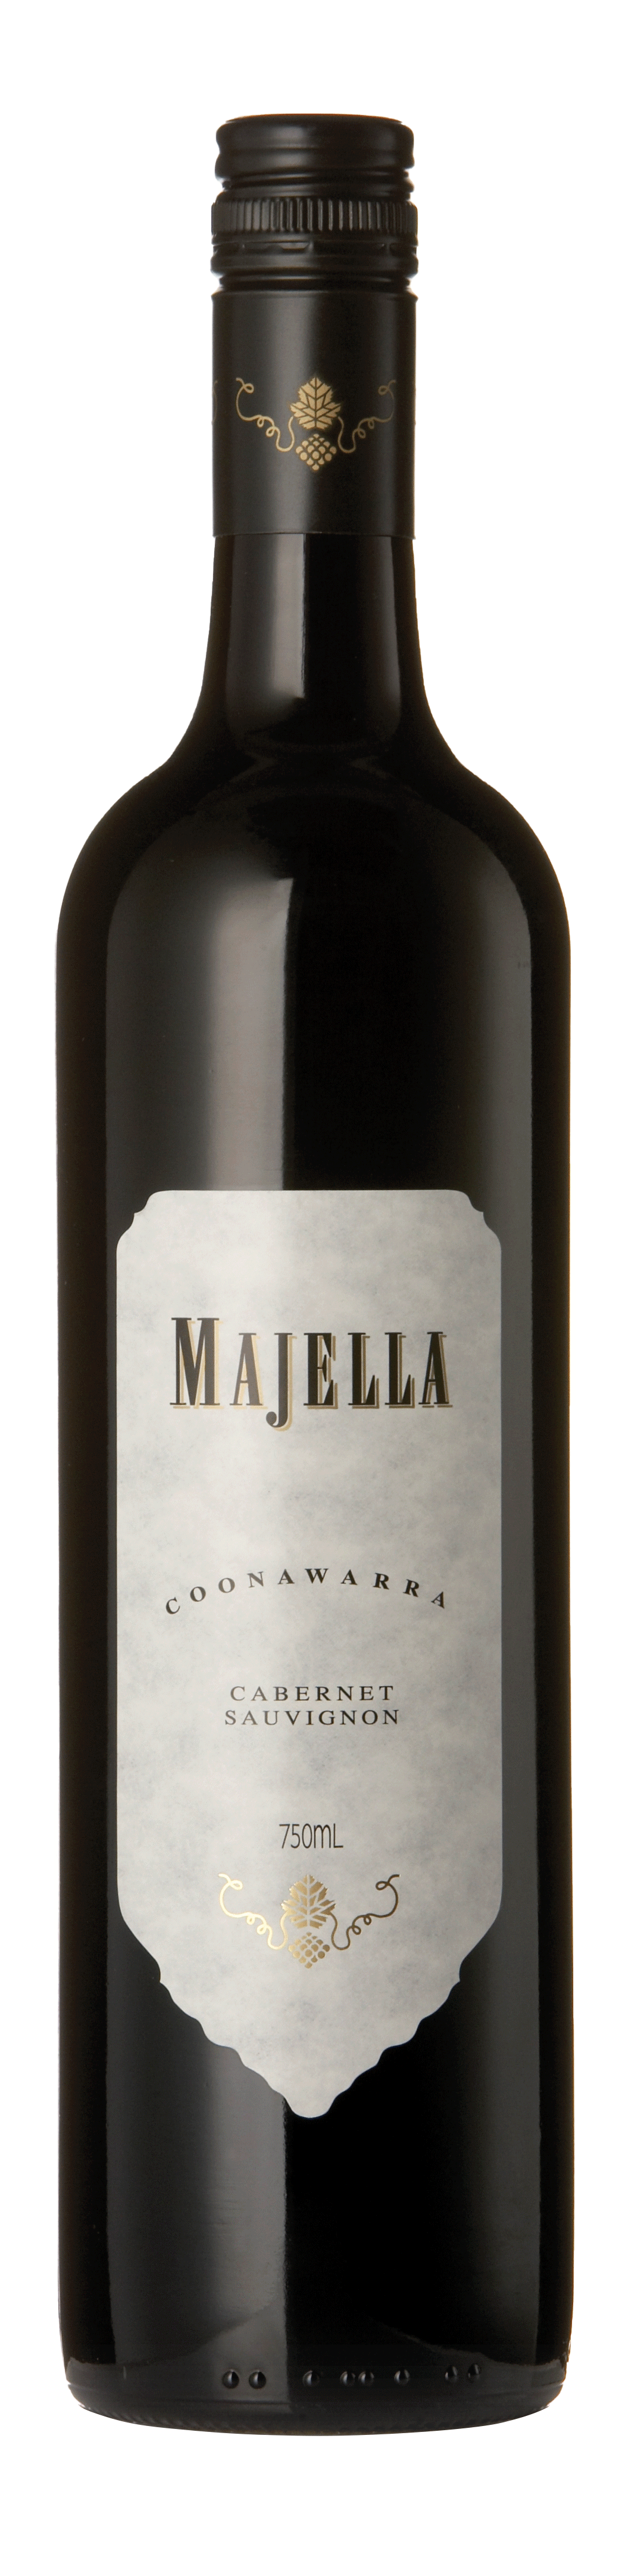 Bottle shot - Majella, Cabernet Sauvignon, Coonawarra, Australia